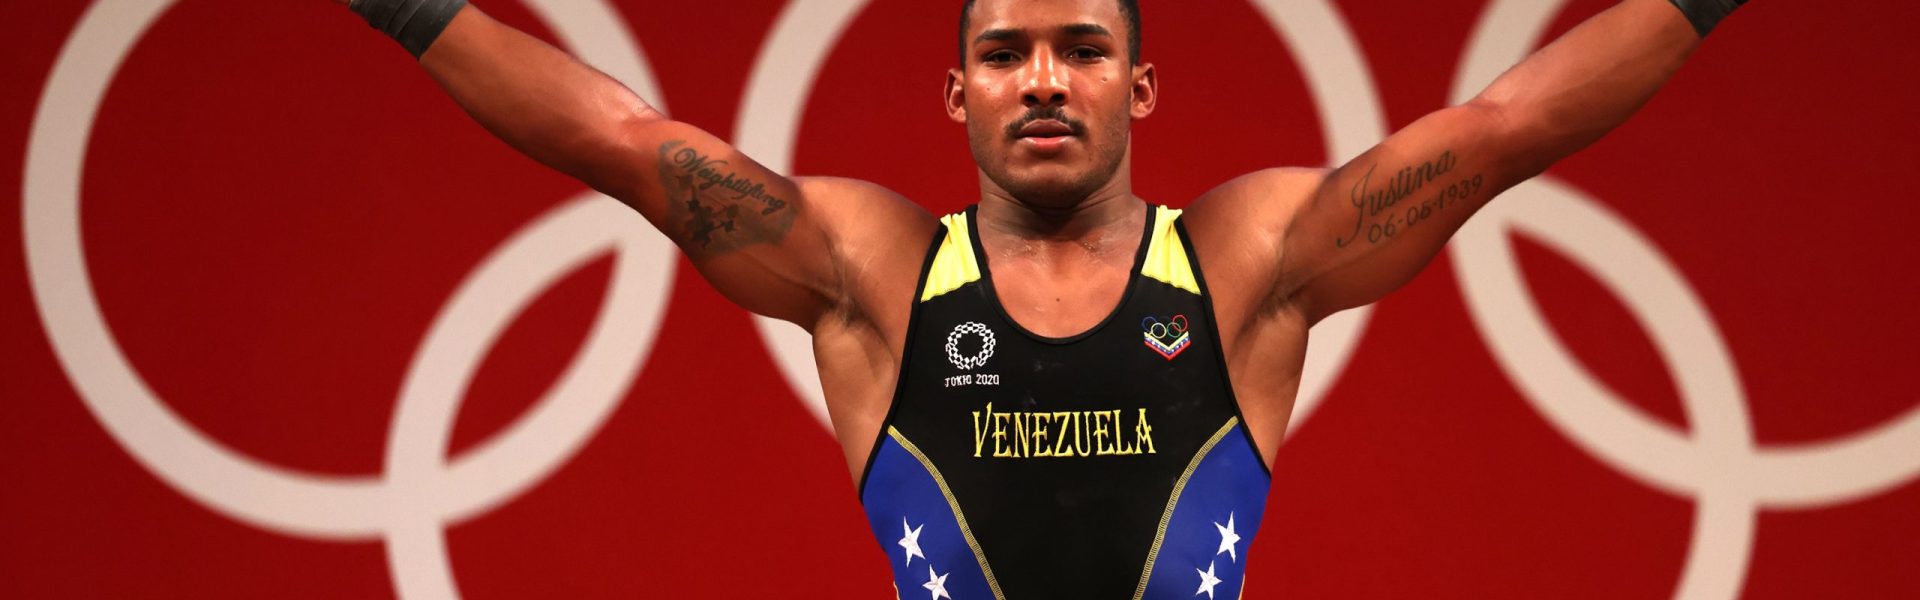 Julio Mayora se consagró Campeón Panamericano de Halterofilia